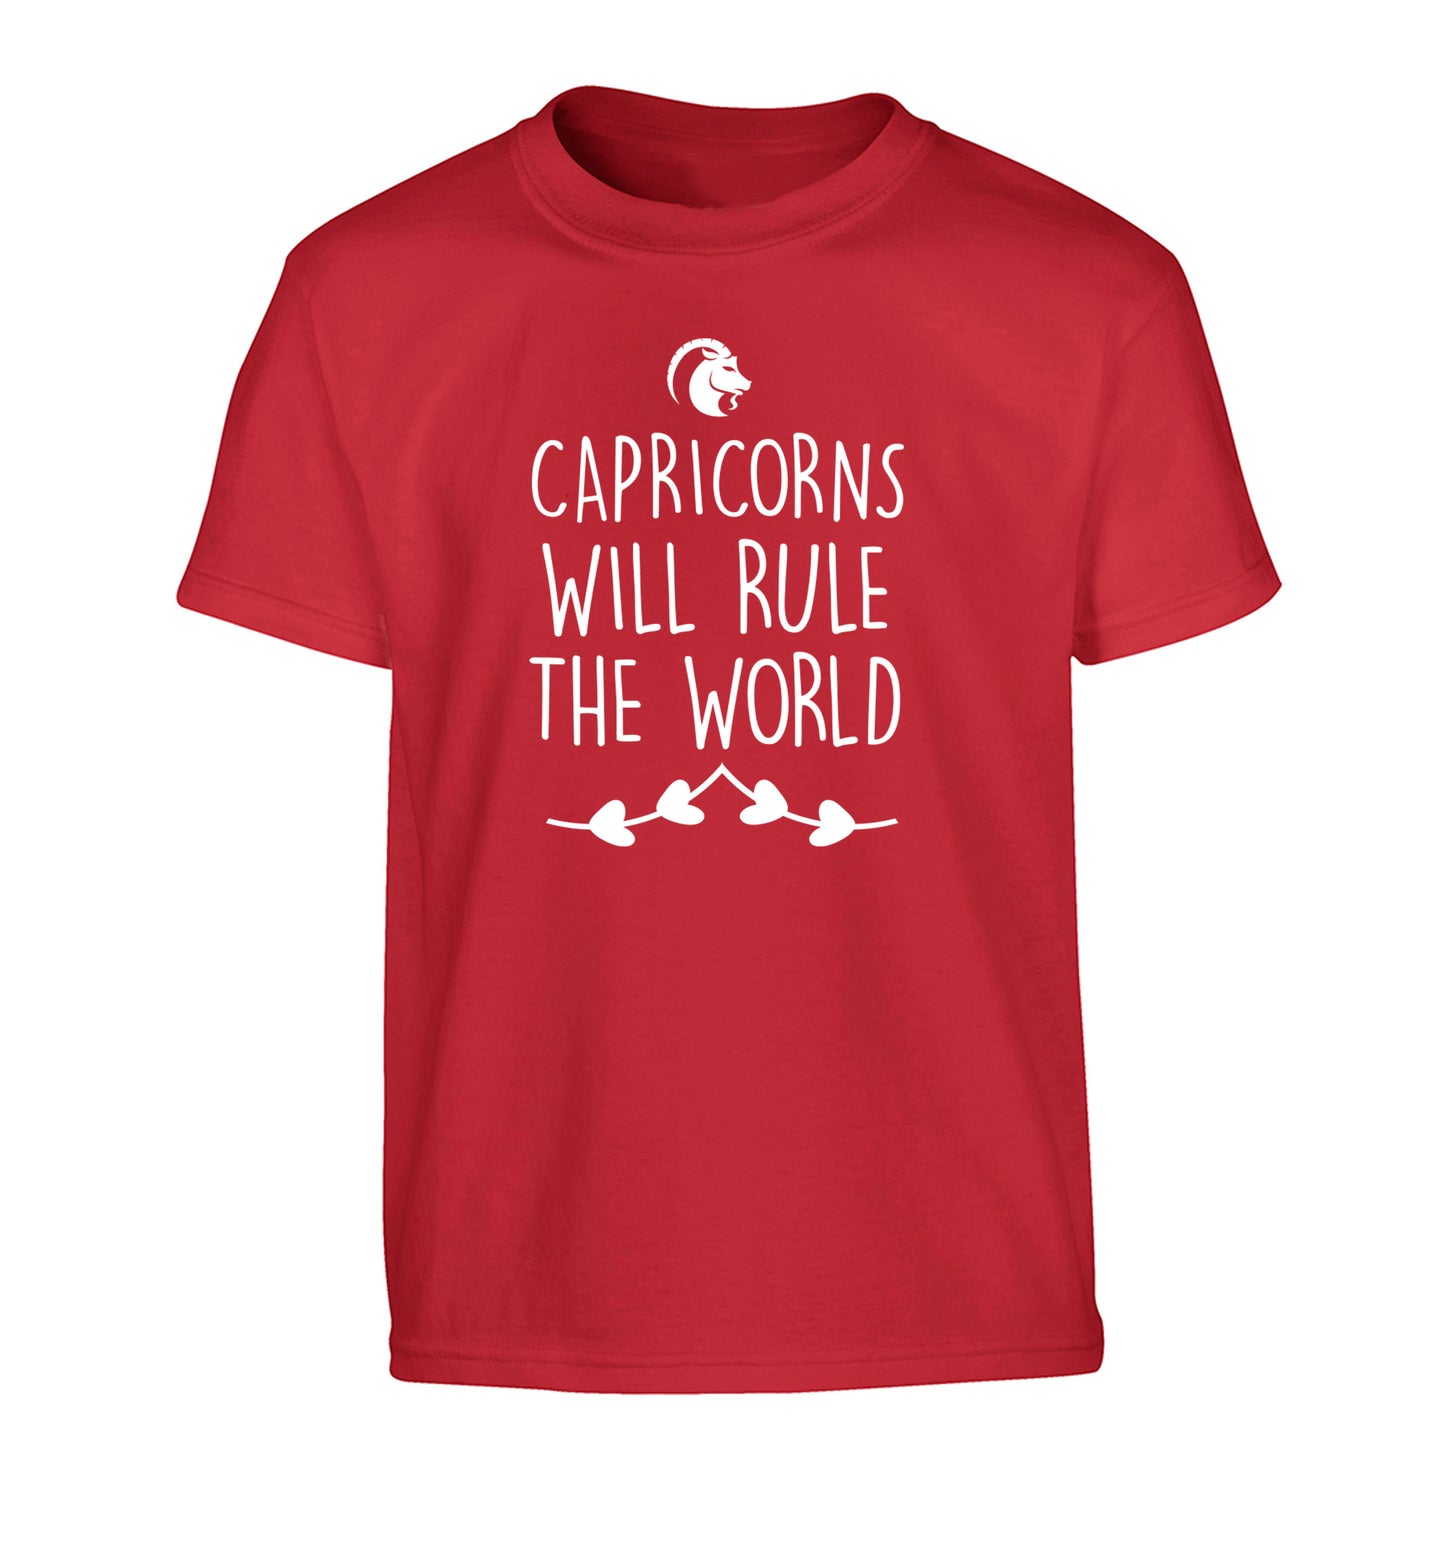 Capricorns will rule the world Children's red Tshirt 12-13 Years